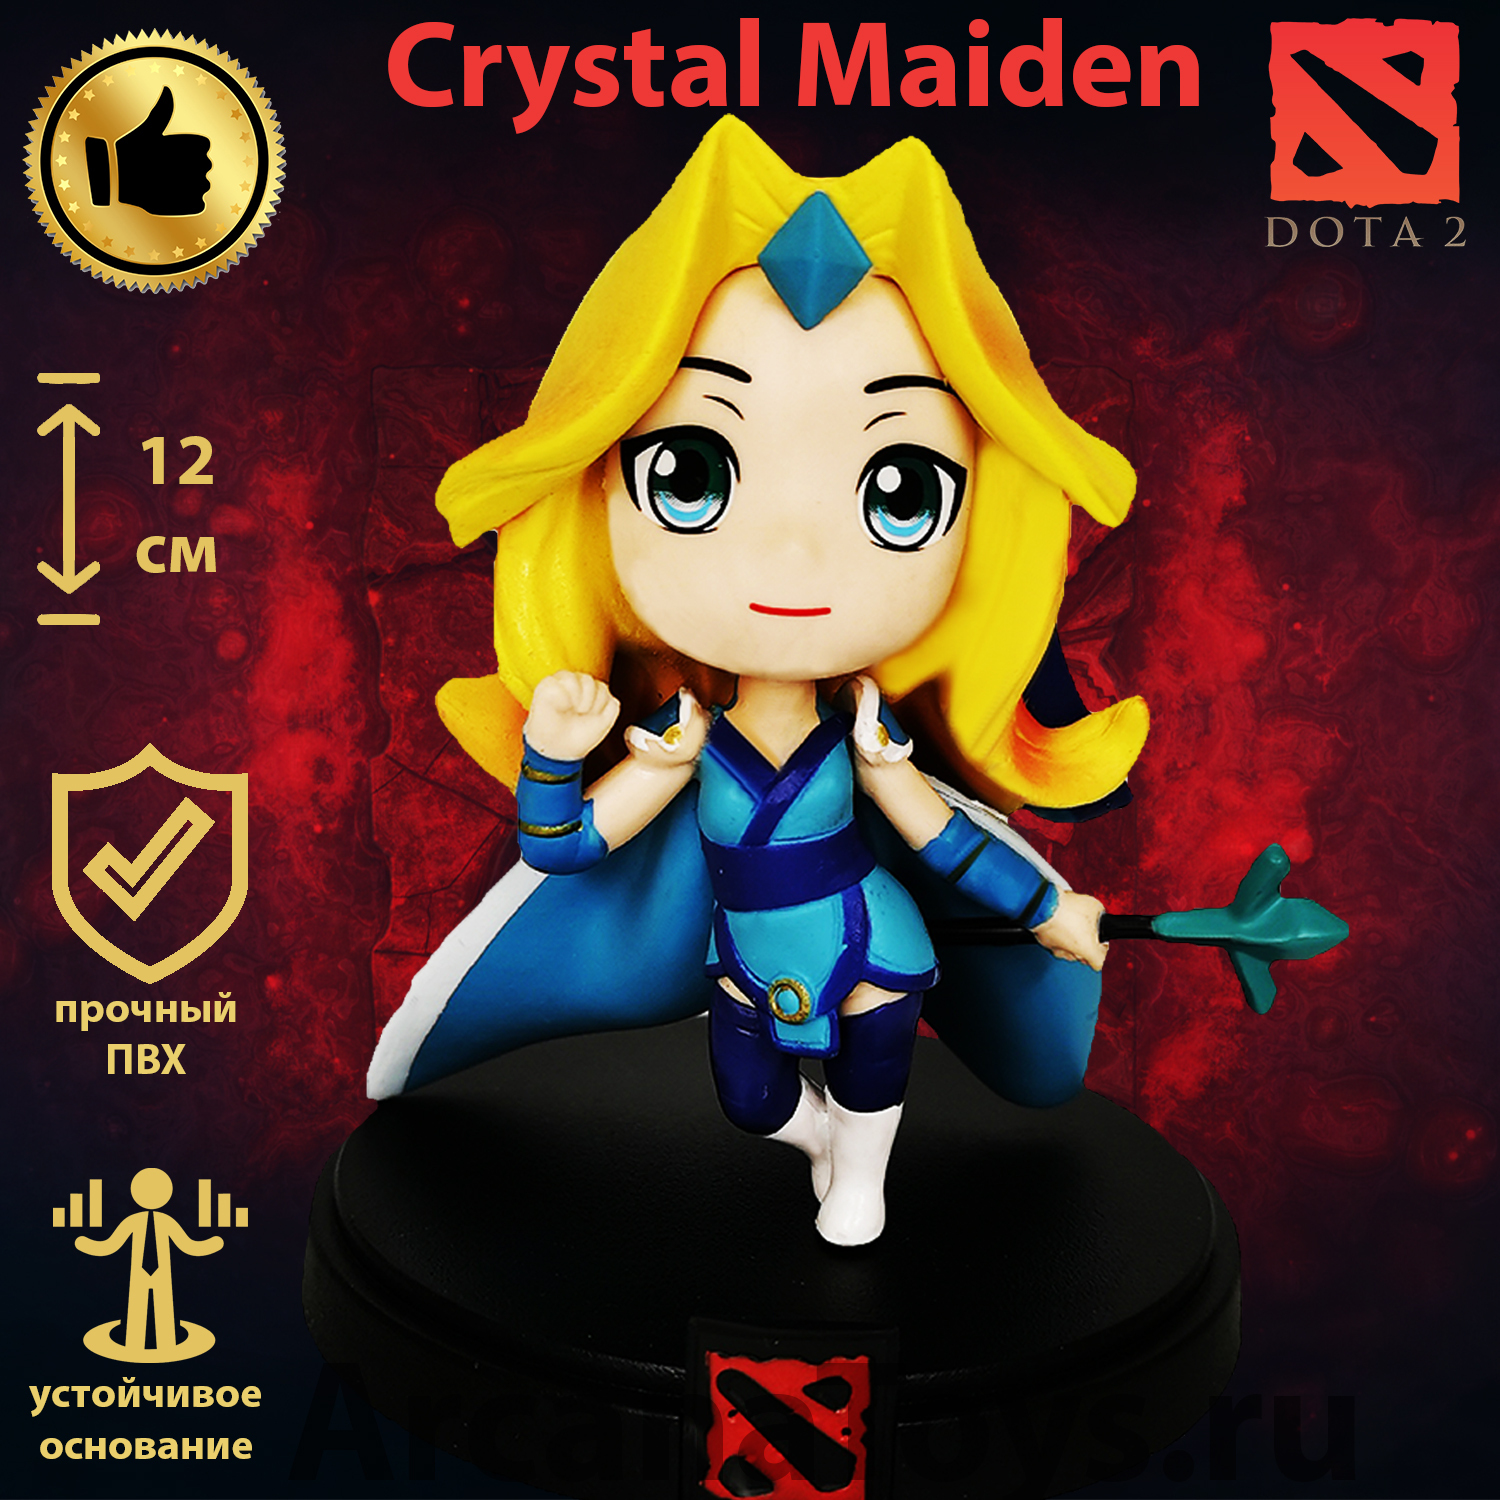 Dota 2 crystal maiden фигурка фото 9